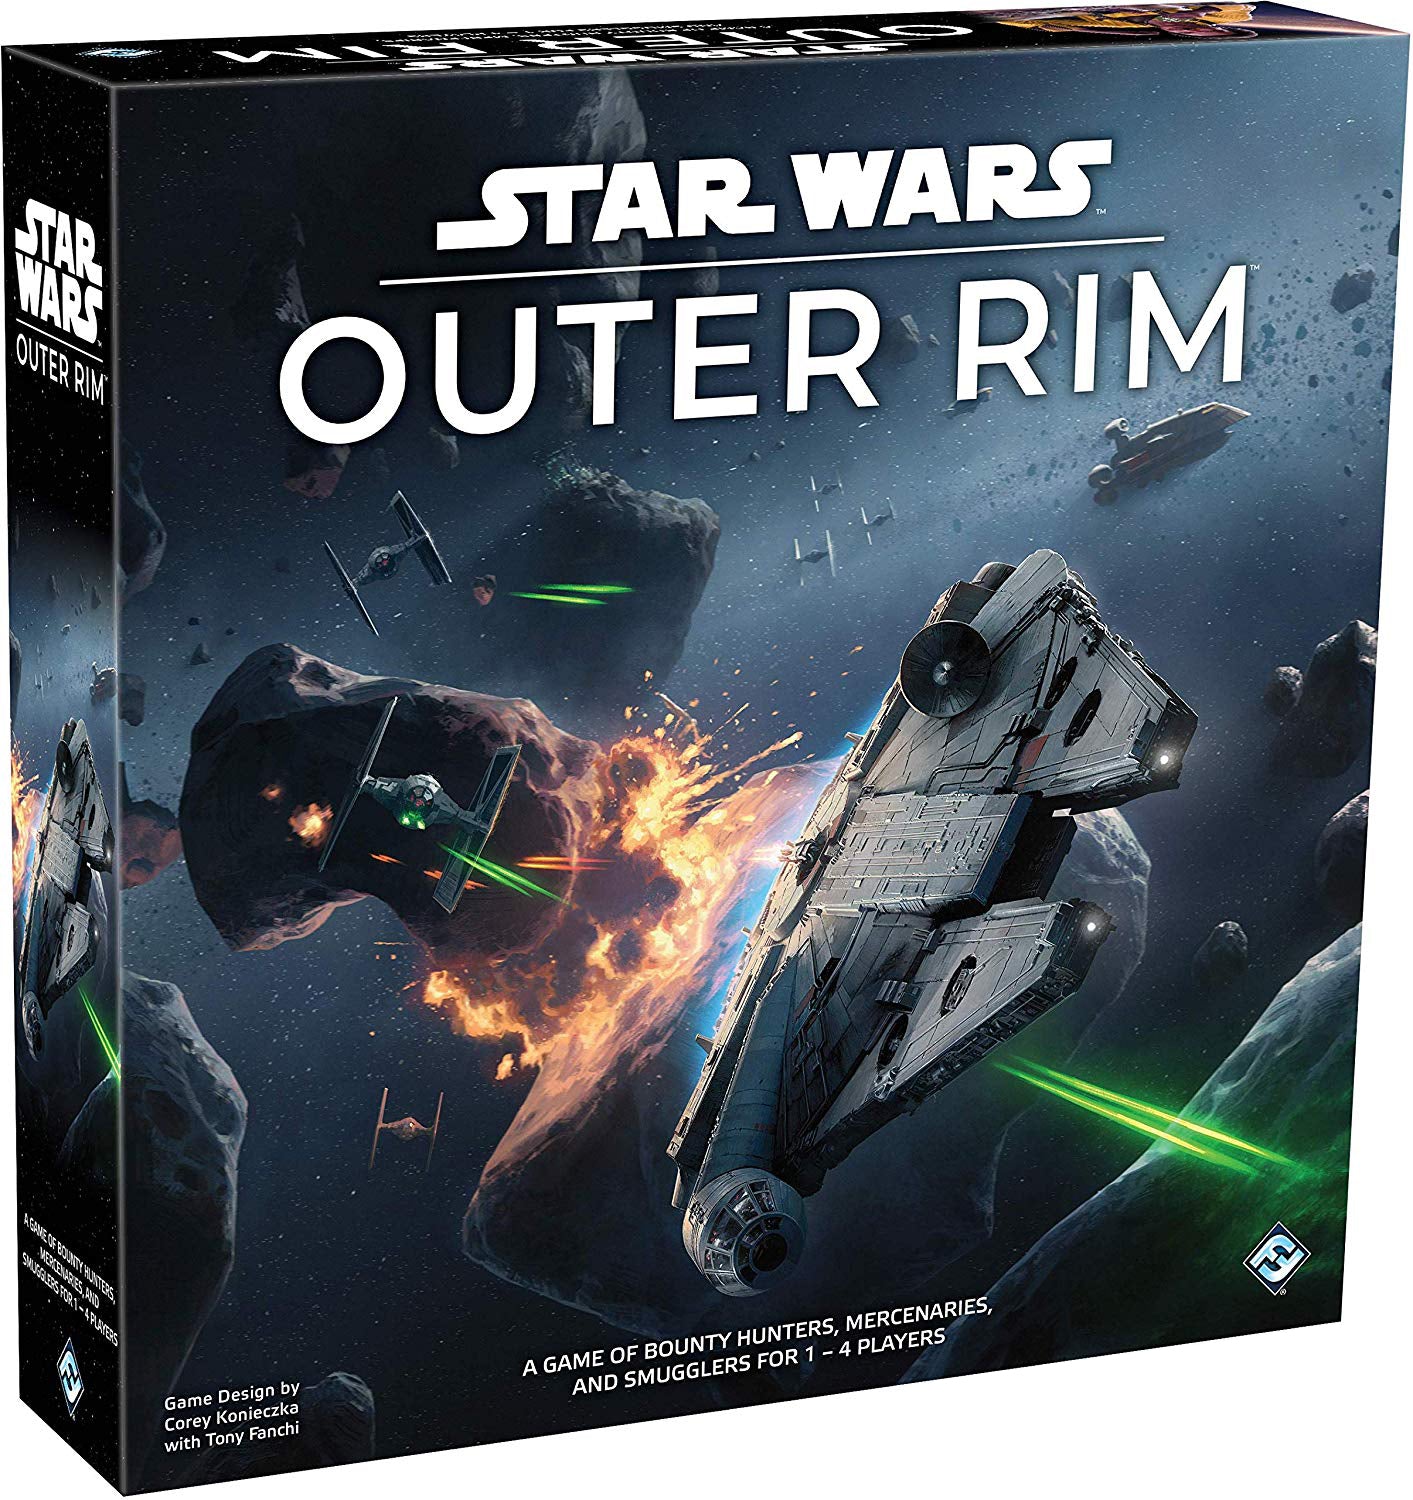 სამაგიდო თამაში ვარსკვლავური ომები გარე რკალი (Star Wars Outer Rim) სამაგიდო თამაში